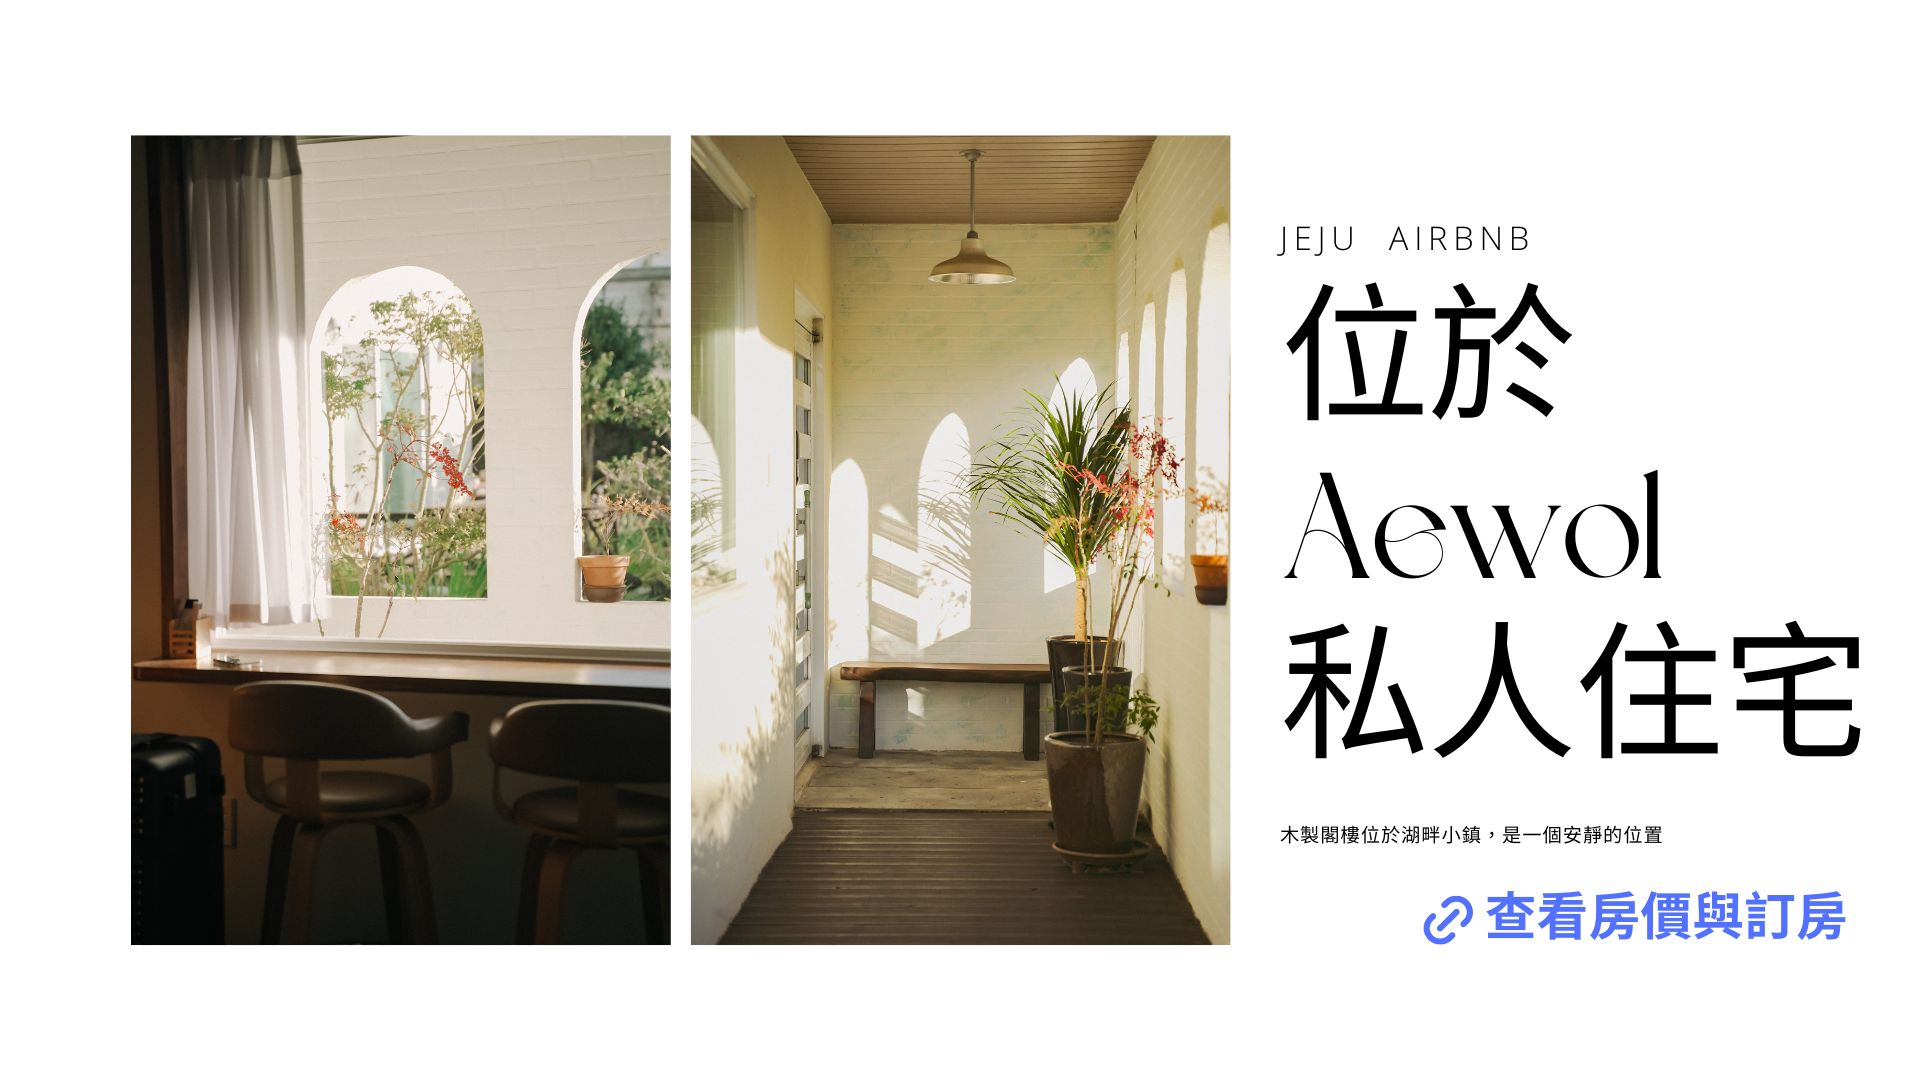 濟州島airbnb資訊位於Aewol的私人住宅房價與訂房